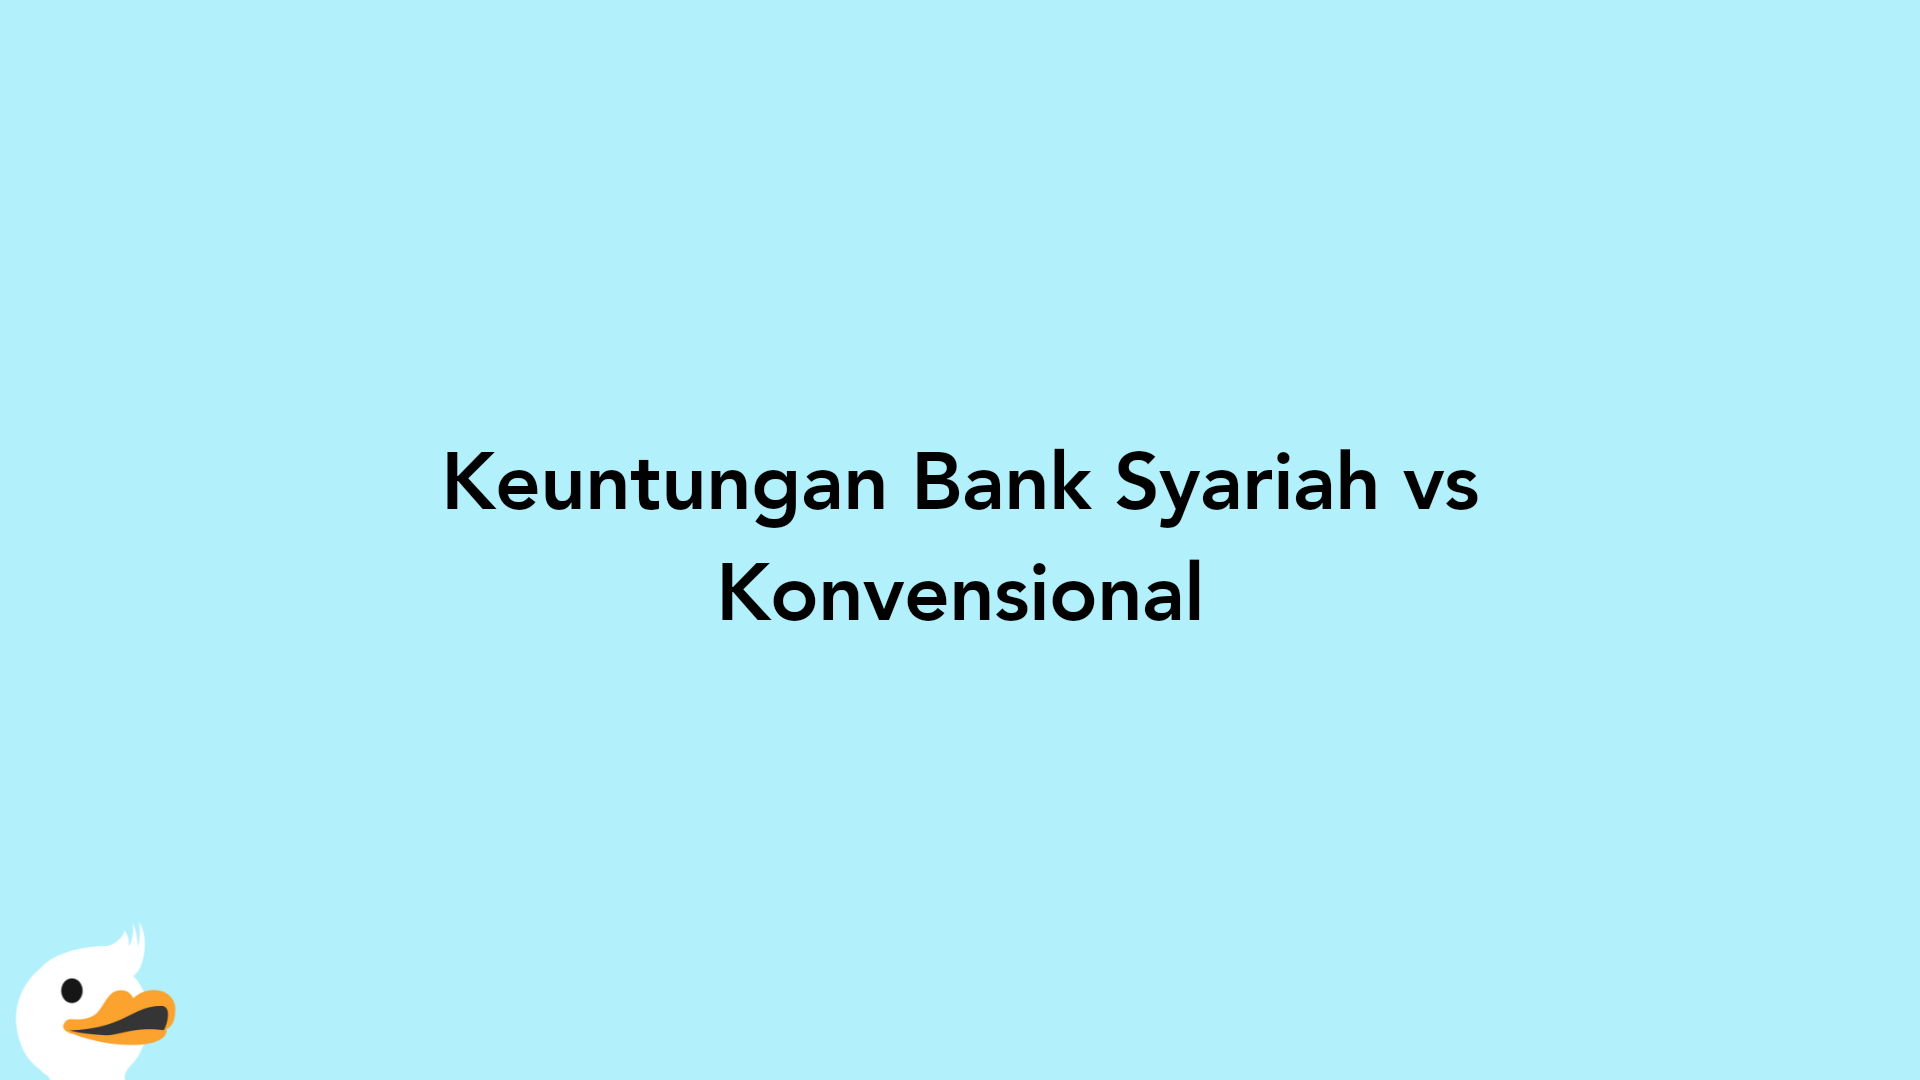 Keuntungan Bank Syariah vs Konvensional